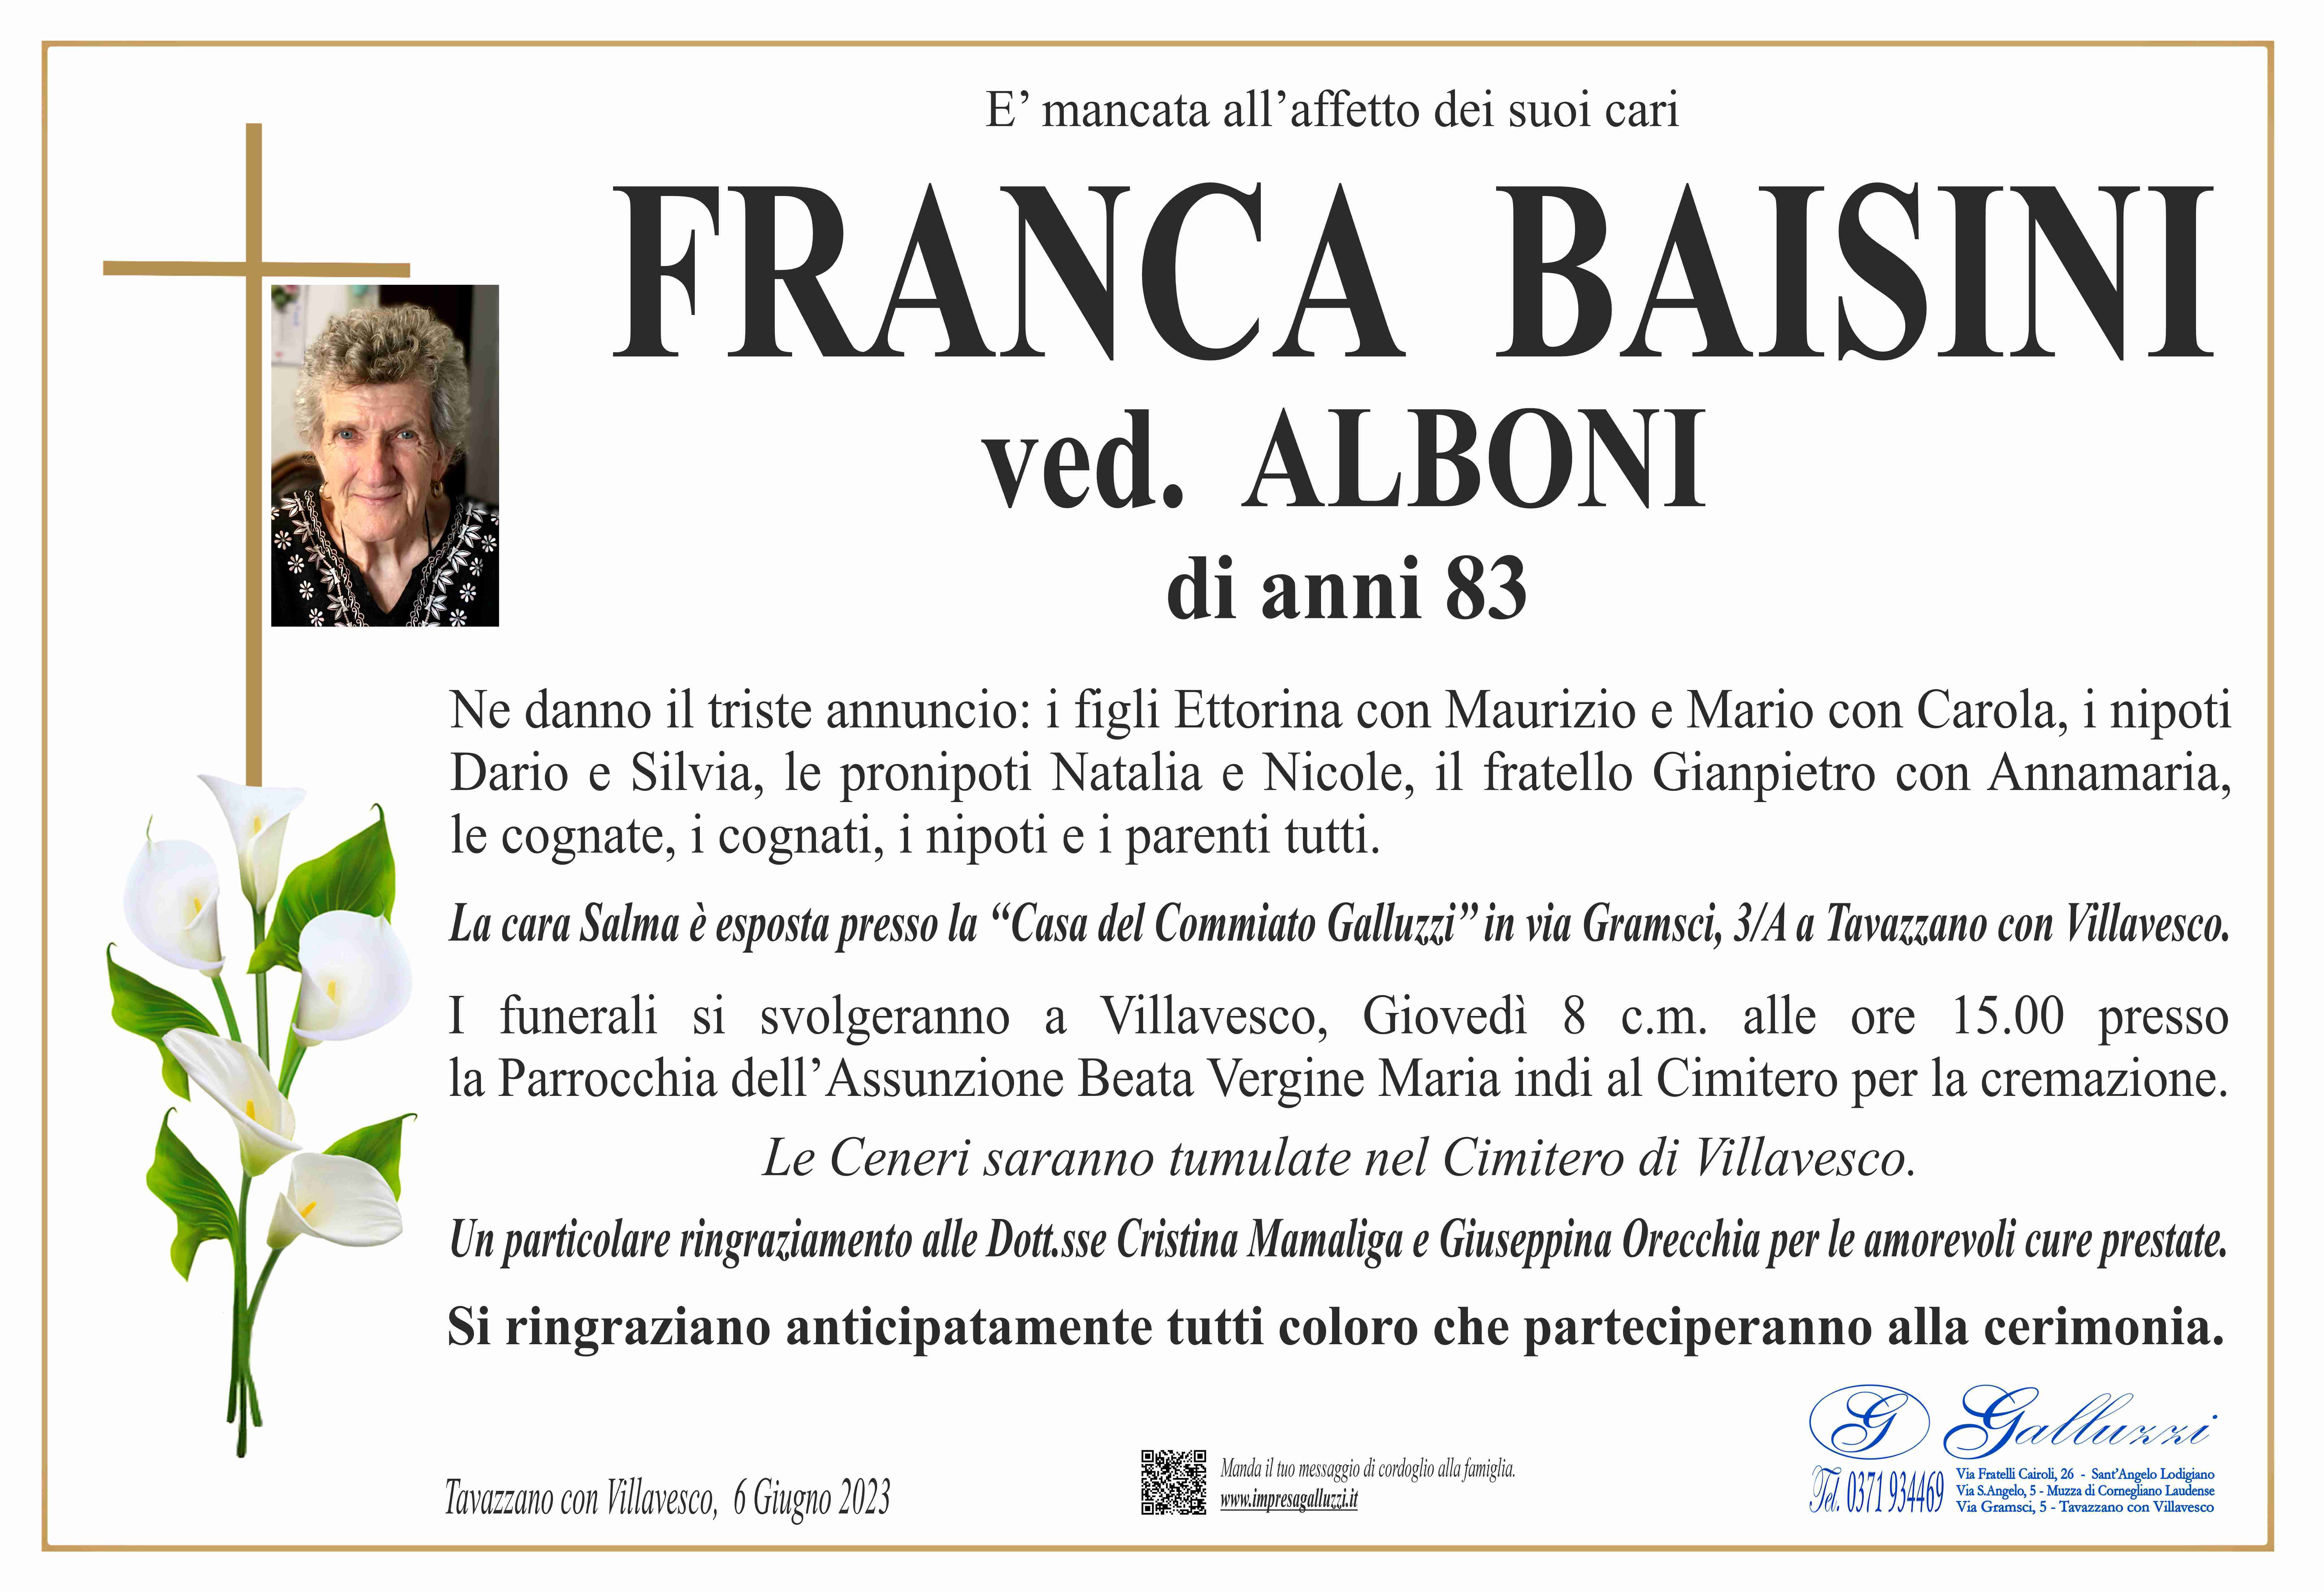 Franca Baisini